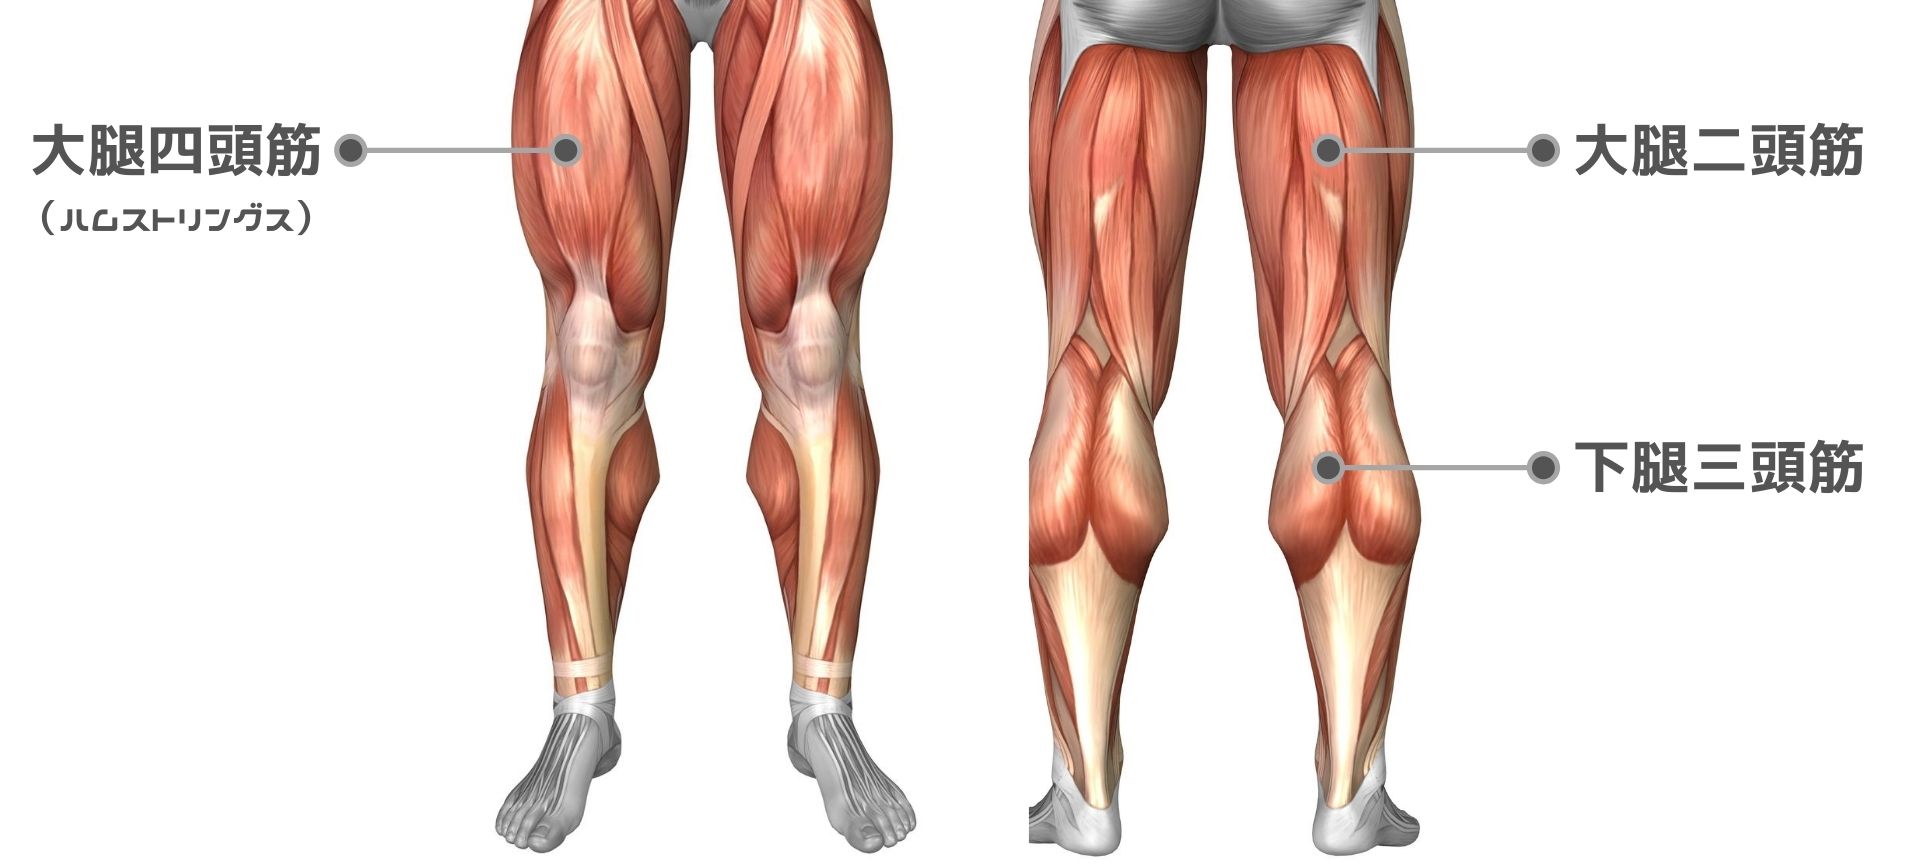 膝の痛みを予防する筋トレ ストレッチ 前もも 裏もも ふくらはぎの筋肉を鍛える 健康 トレーニング スポーツ Melos